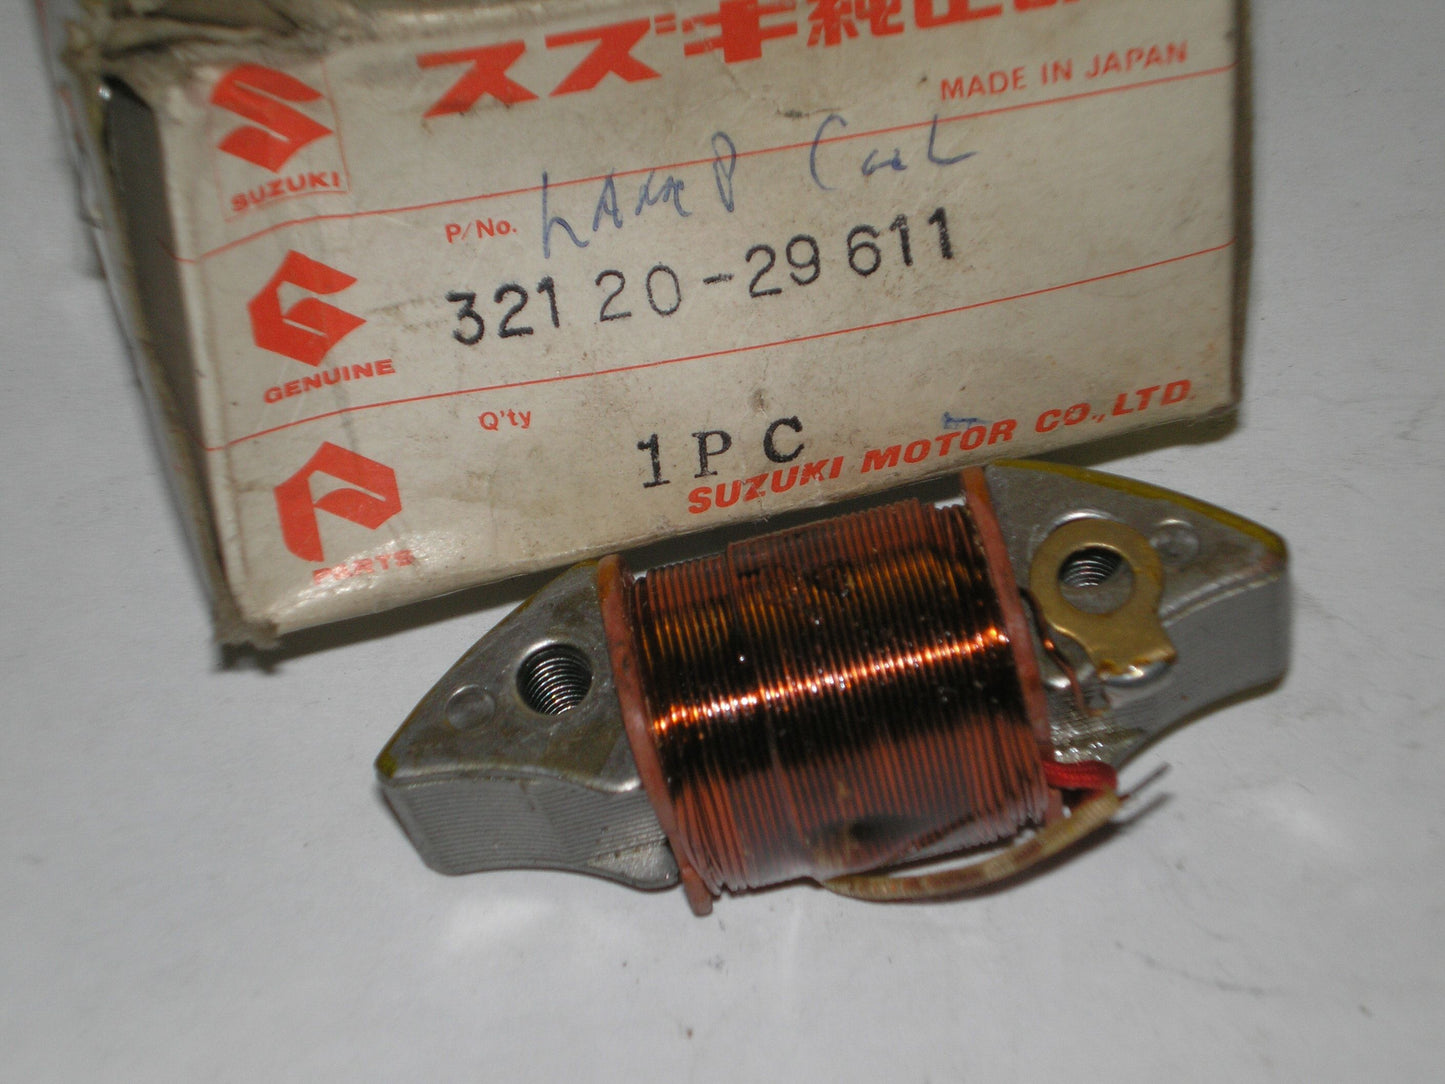 SUZUKI TS185 TS250 1973-1976 Magneto Charging Coil 32120-29611